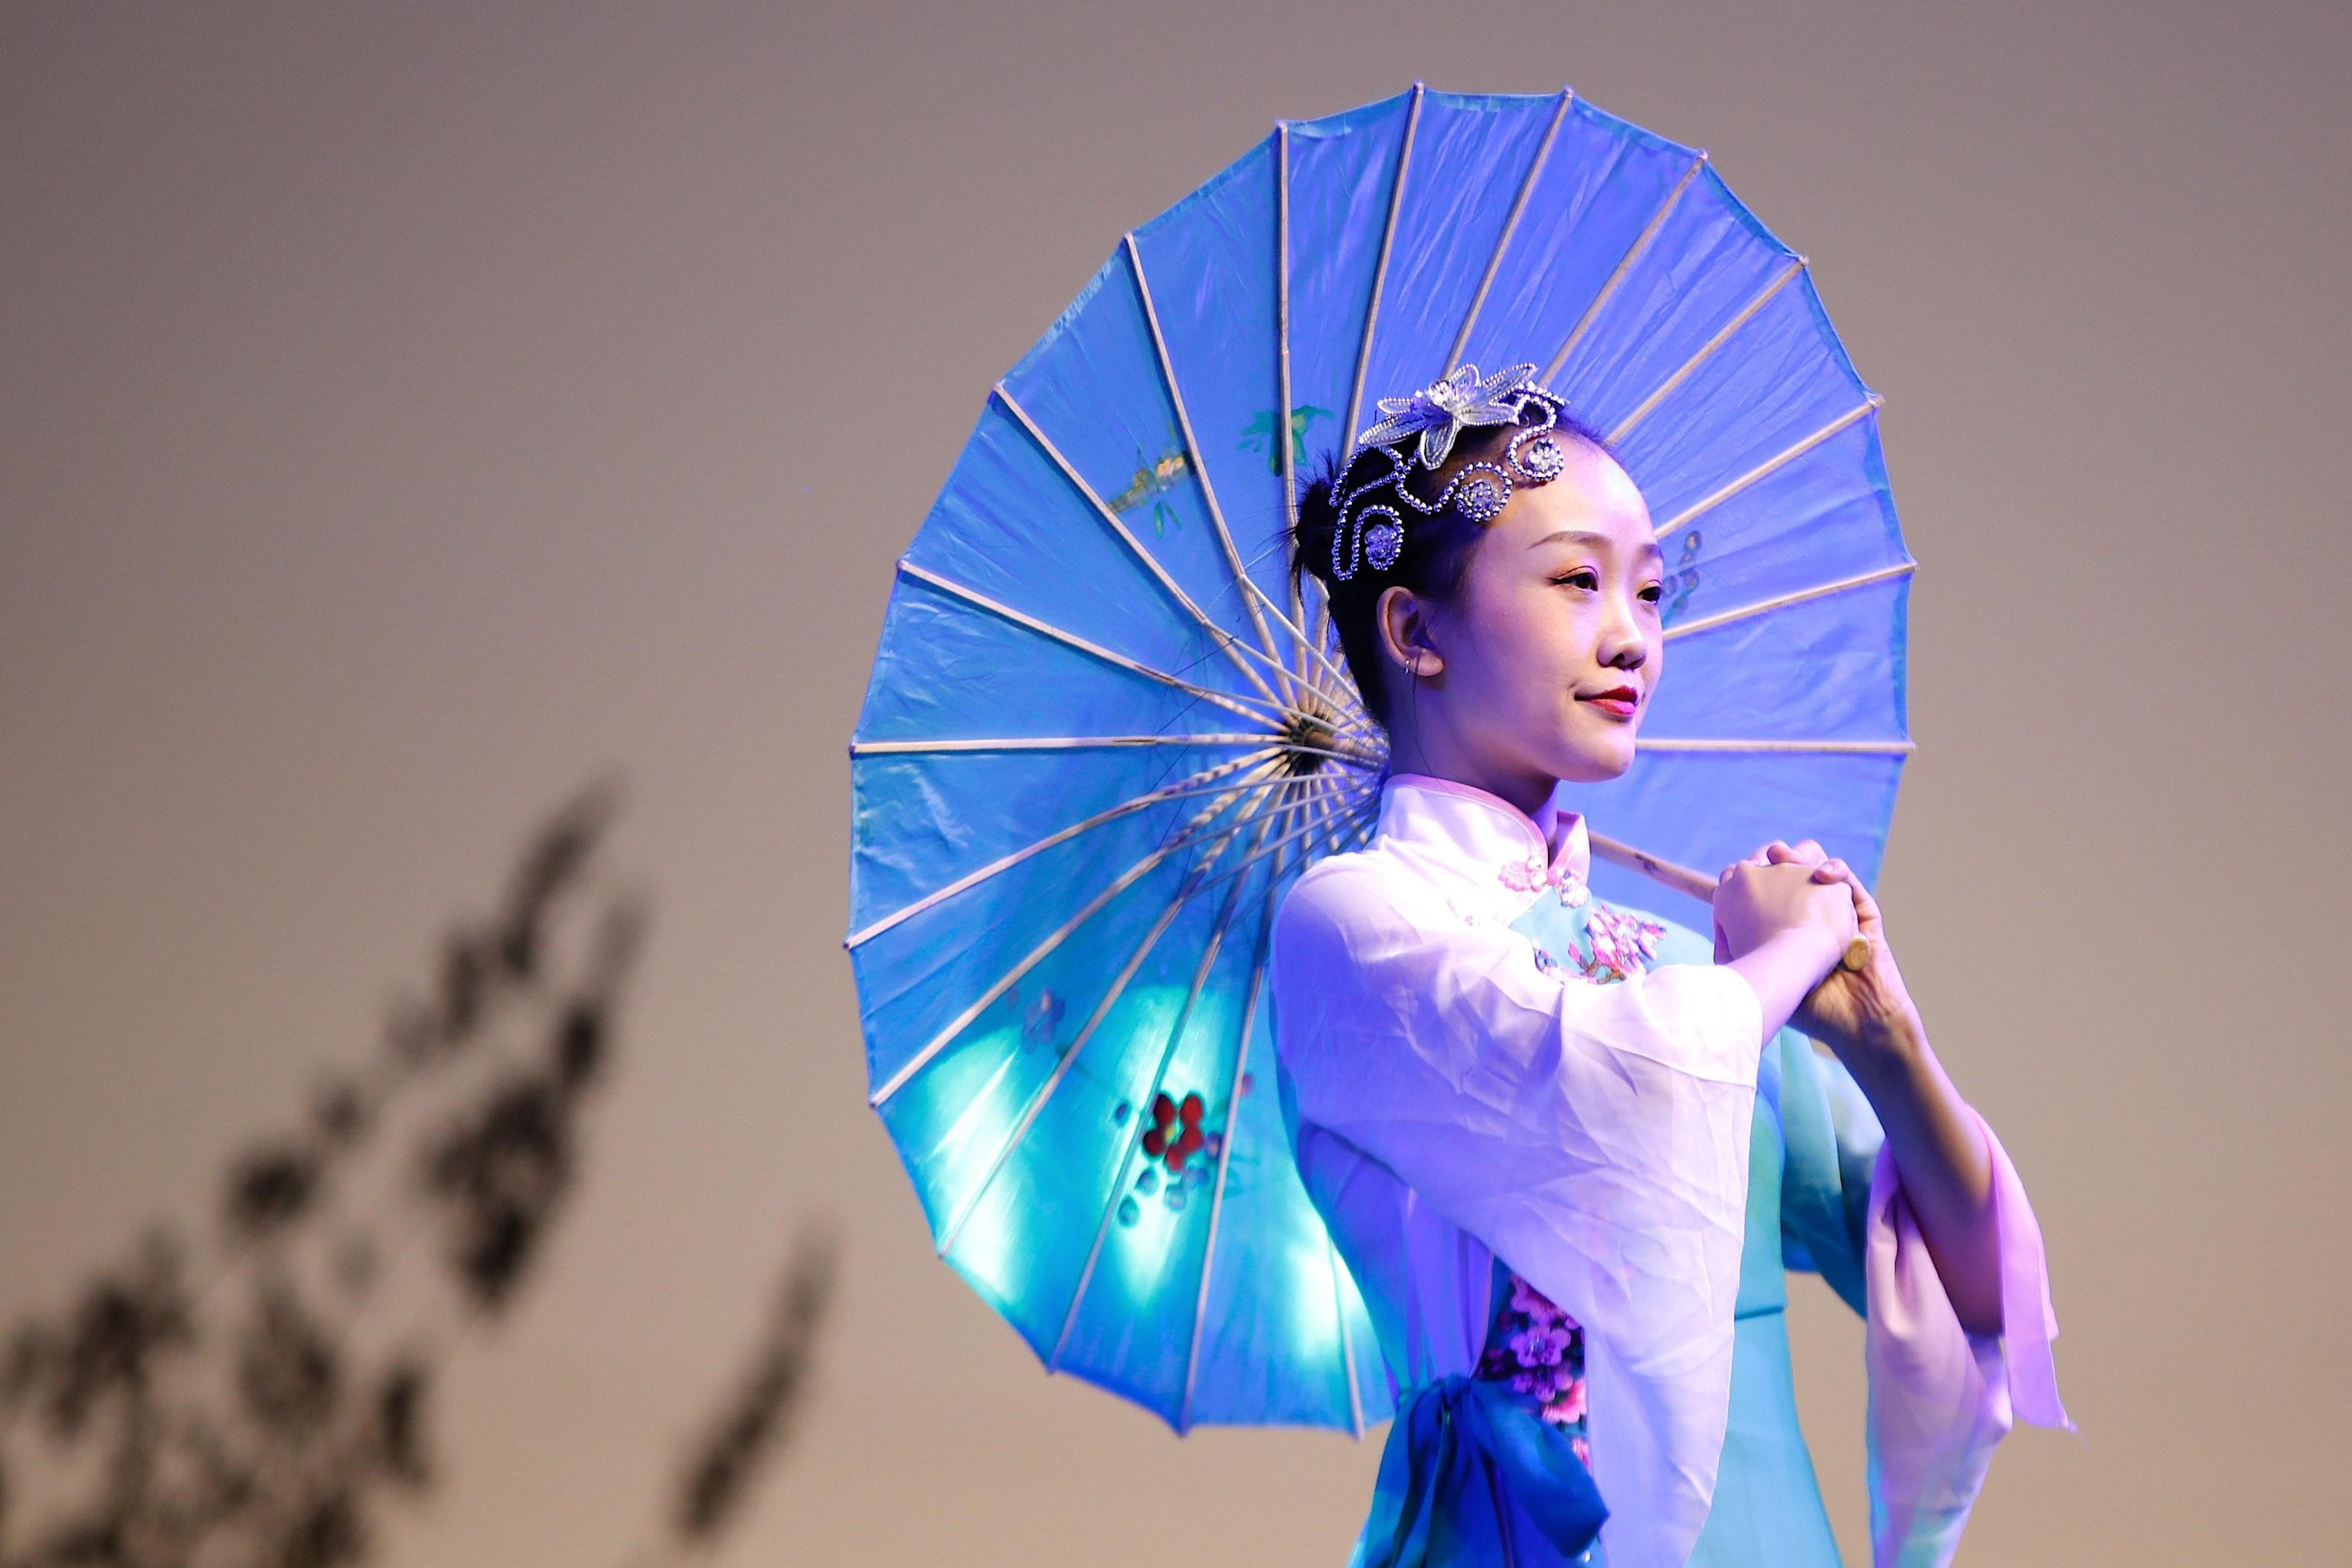 Una ballerina cinese si esibisce al cosiddetto "Fesiluz". Il Festival sarà aperto al pubblico fino al 28 febbraio 2020.